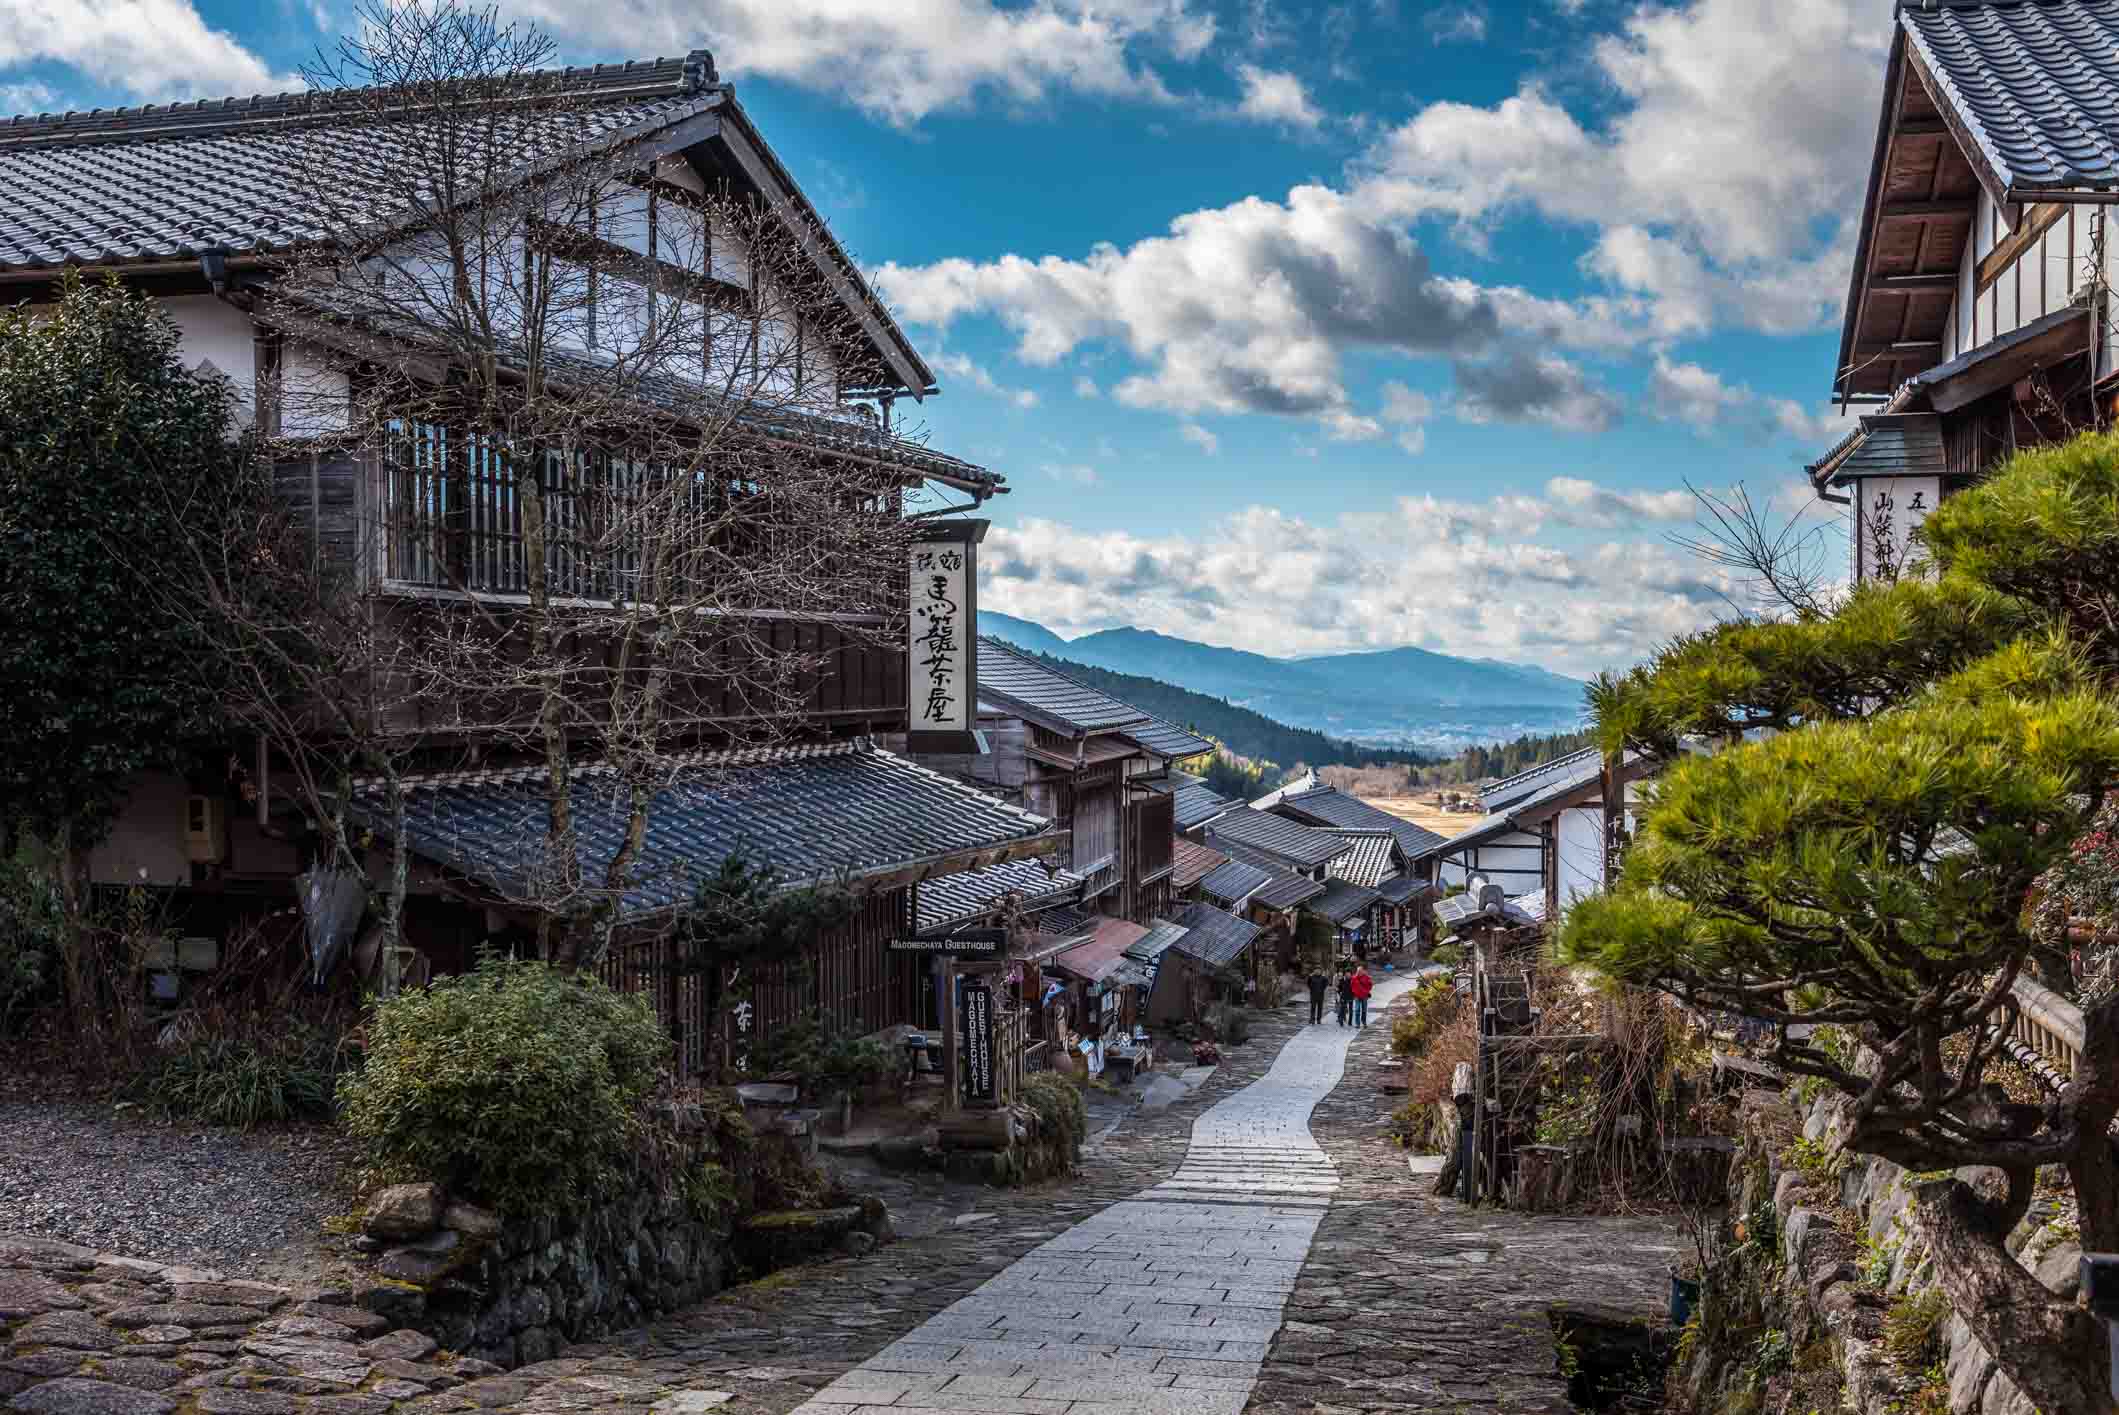 Magome & Tsumago in Kiso Valley, Japan - Time Travel To Edo Period!